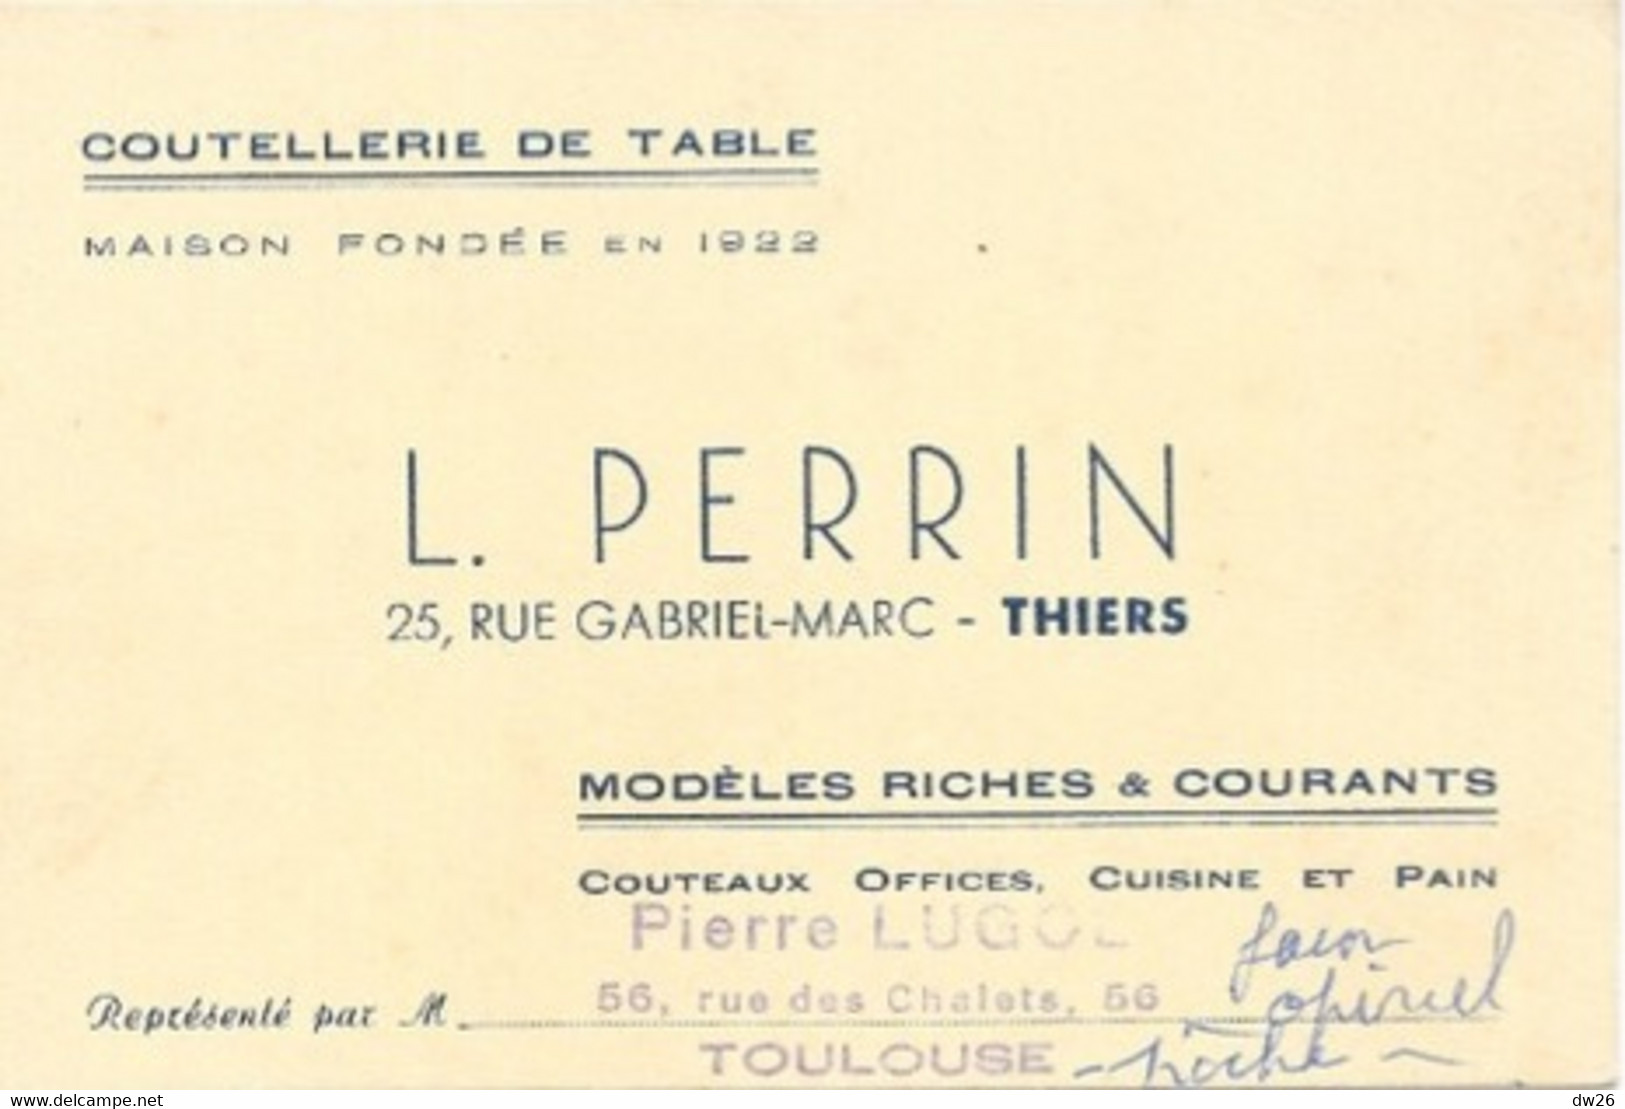 Carte De Visite - Coutellerie De Table L. Perrin, Thiers (couteaux Office, Cuisine) Représentant: Pierre Lugol - Cartes De Visite